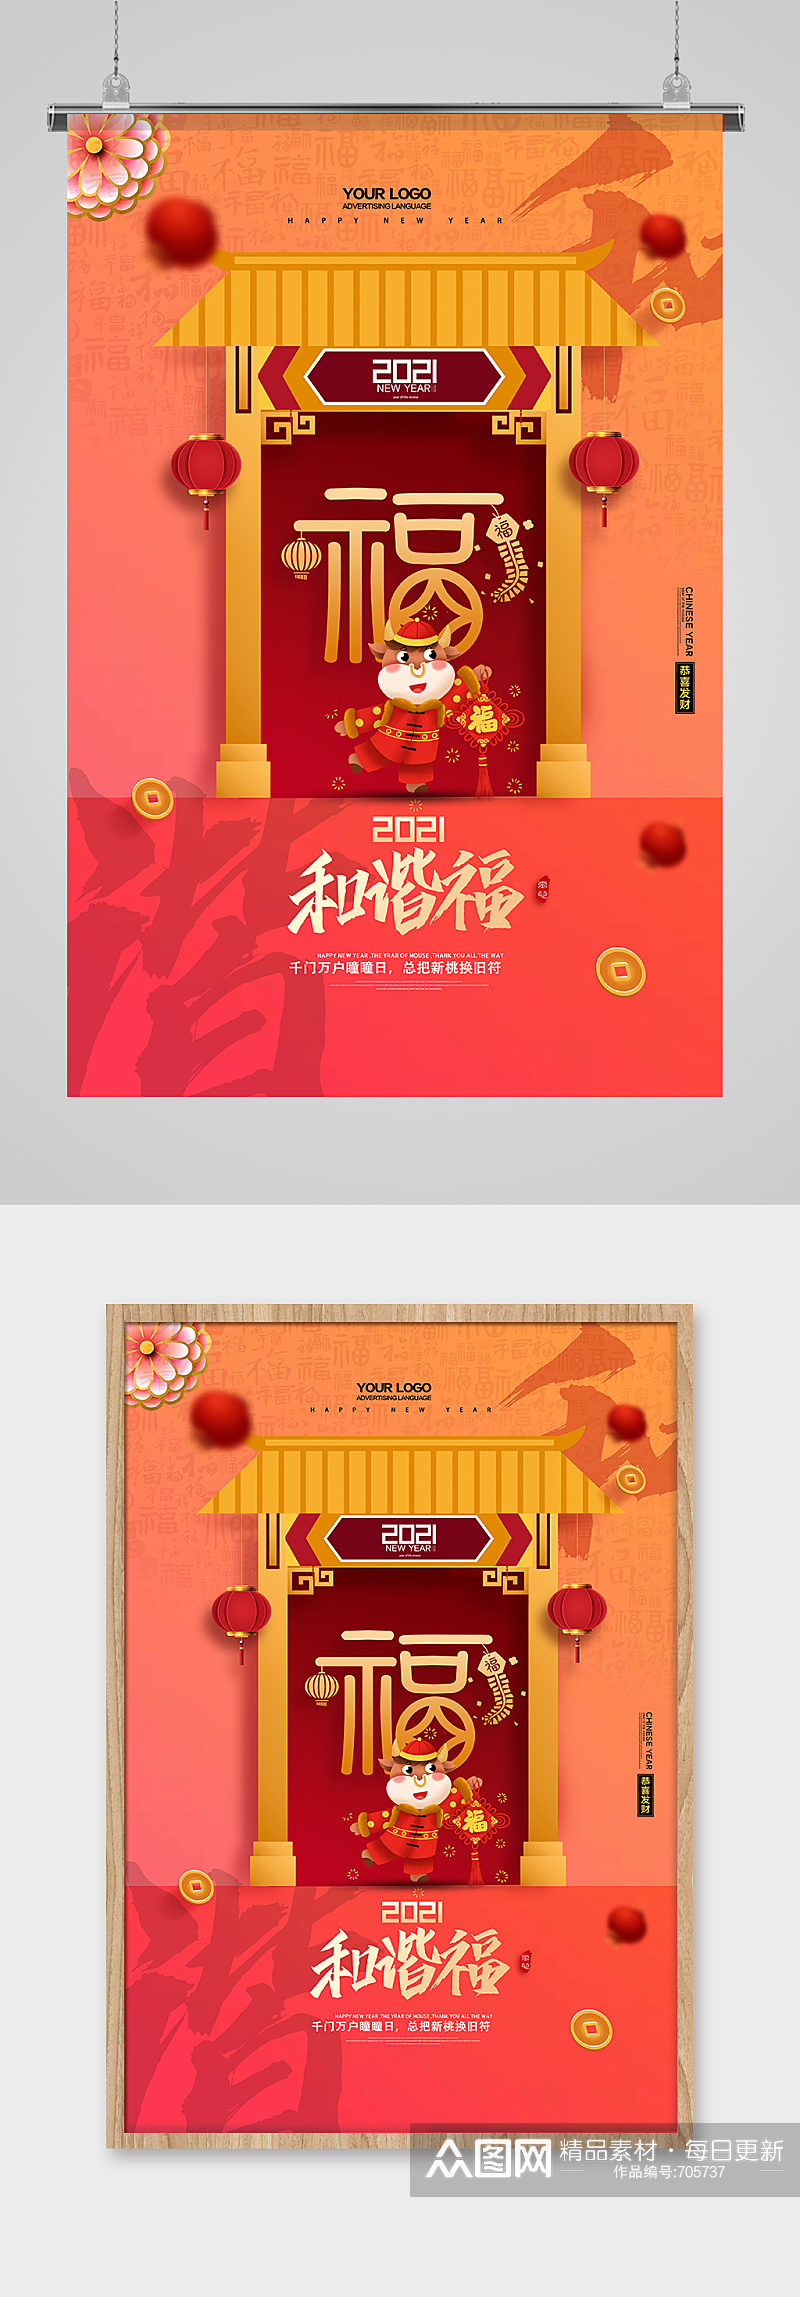 简洁中国风集五福和谐福活动系列海报素材